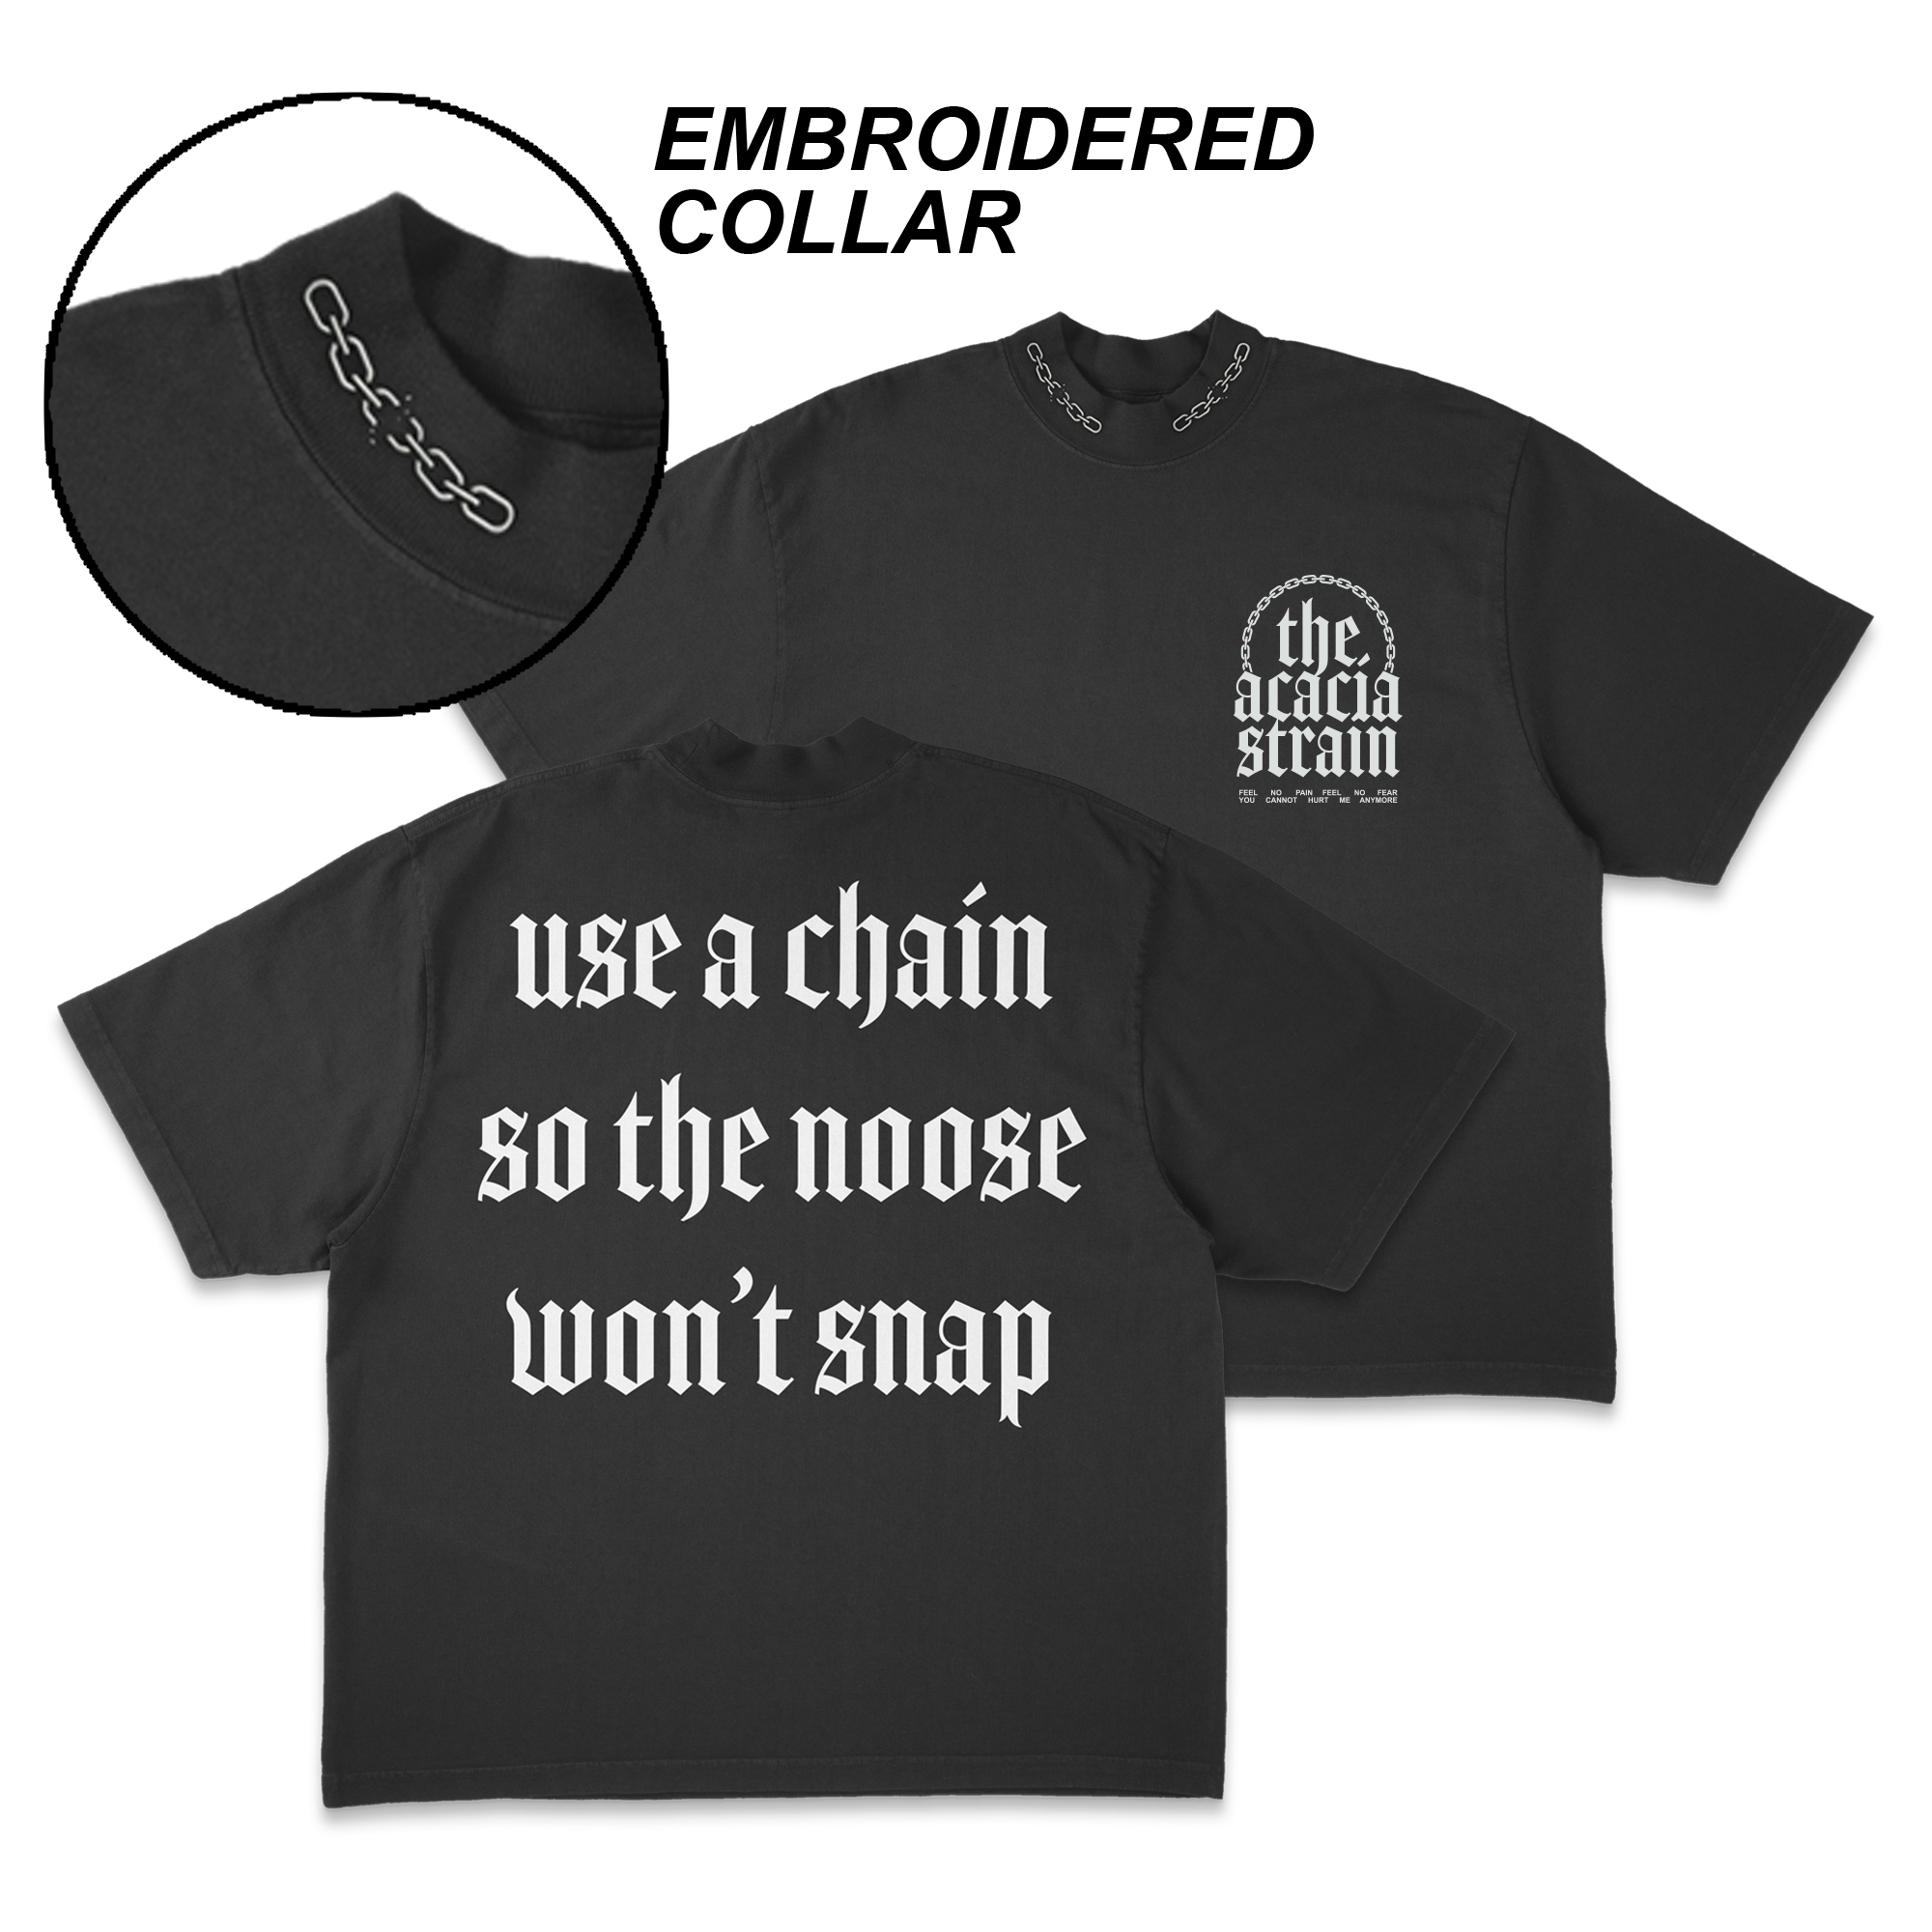 The Acacia Strain - Chain T-Shirt